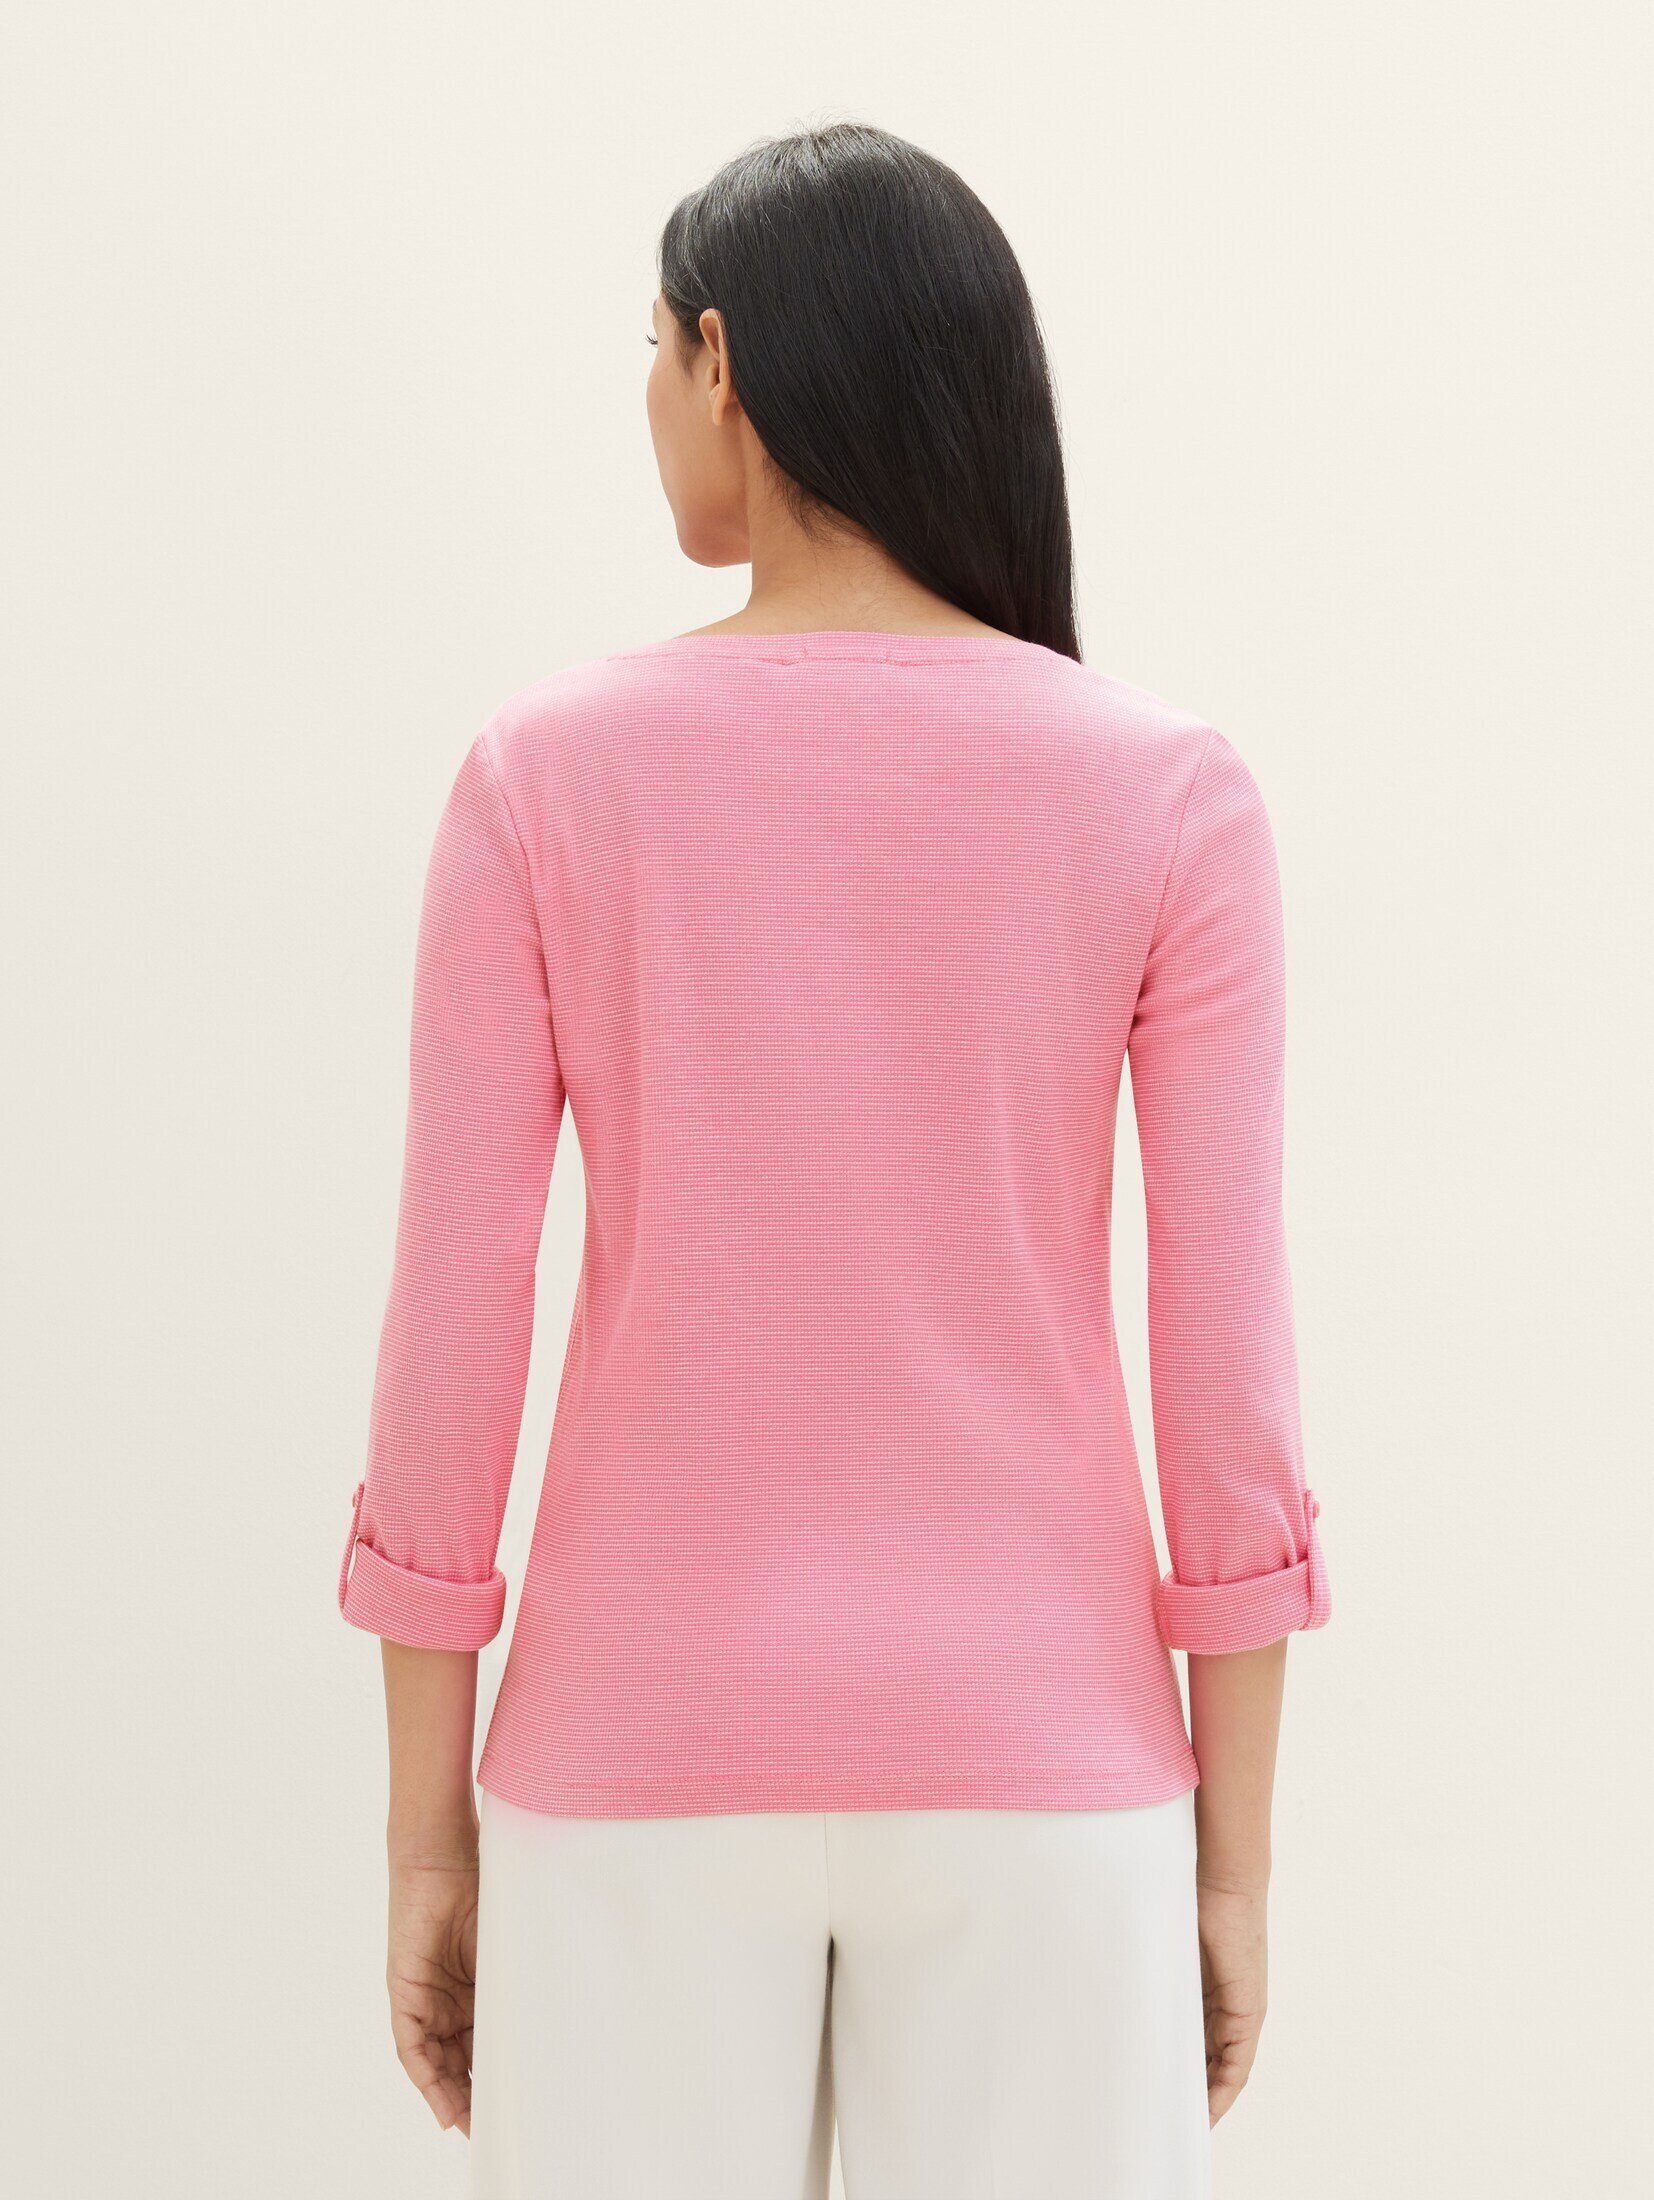 TOM ck offwhite pink Langarmshirt stripe T-Shirt mit TAILOR Bio-Baumwolle